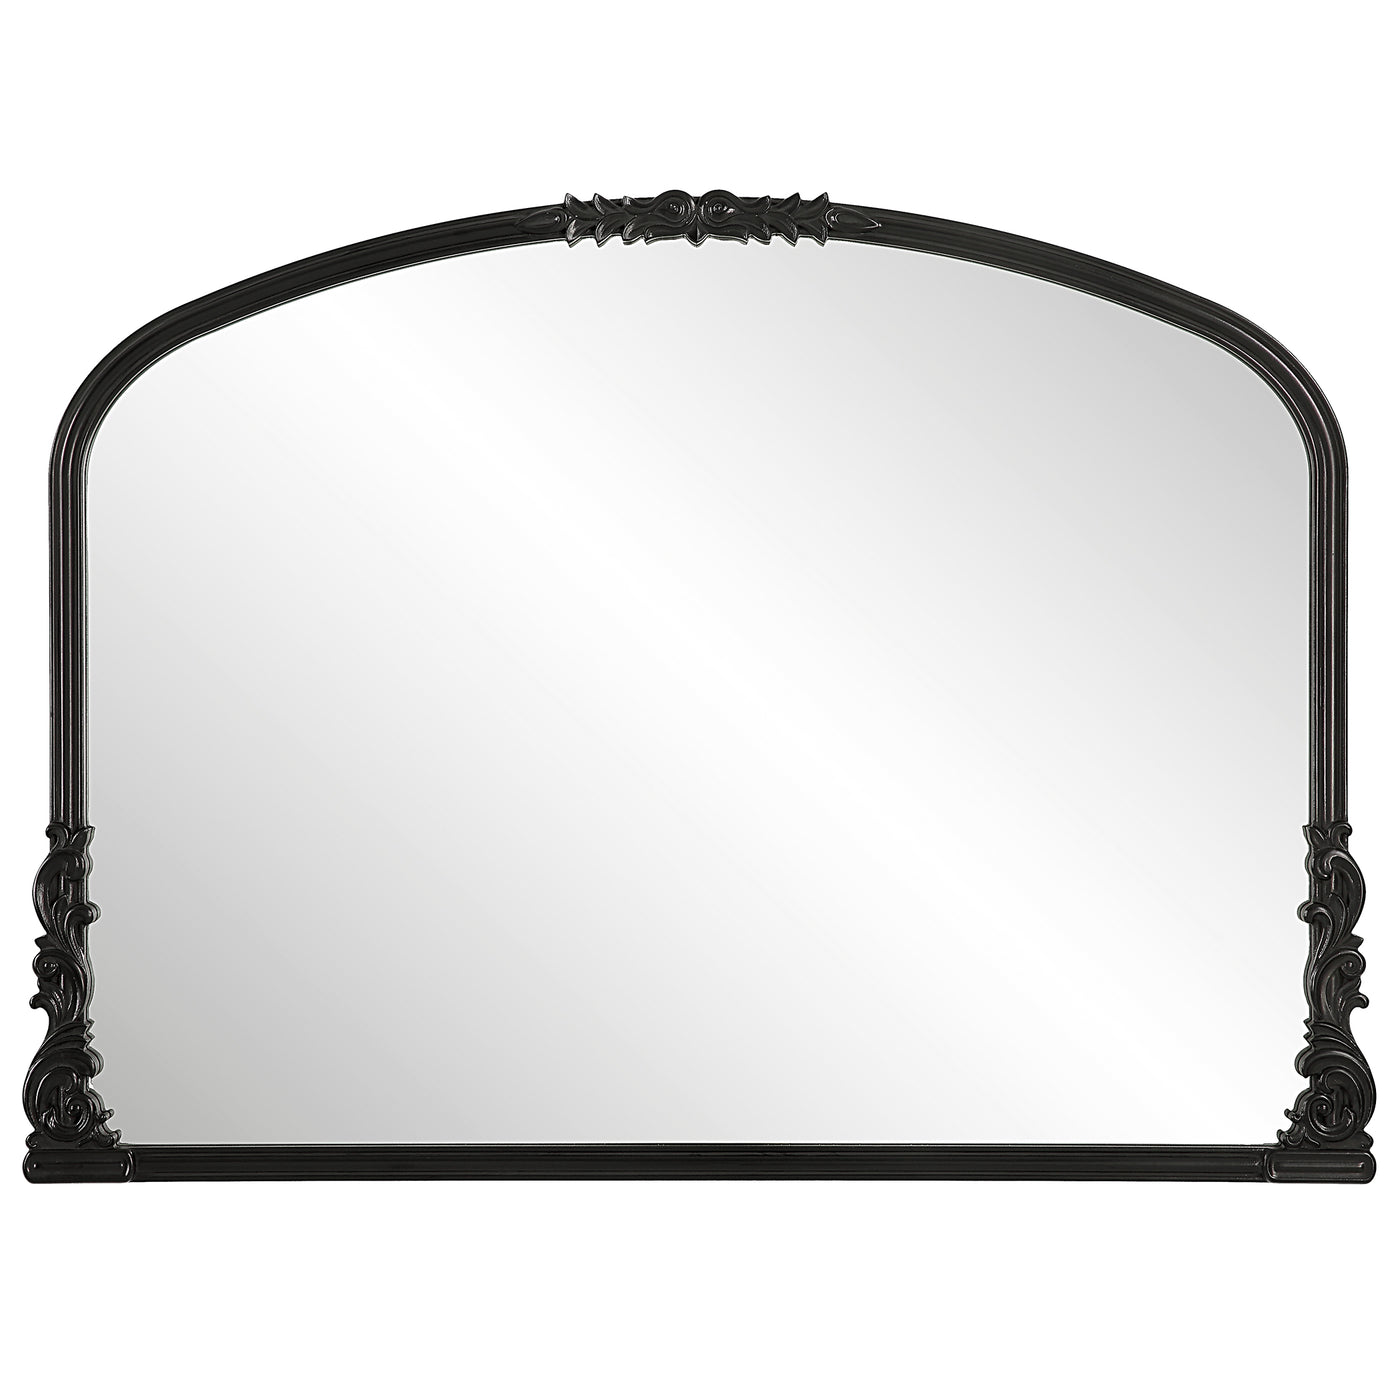 The Vienna Mirror